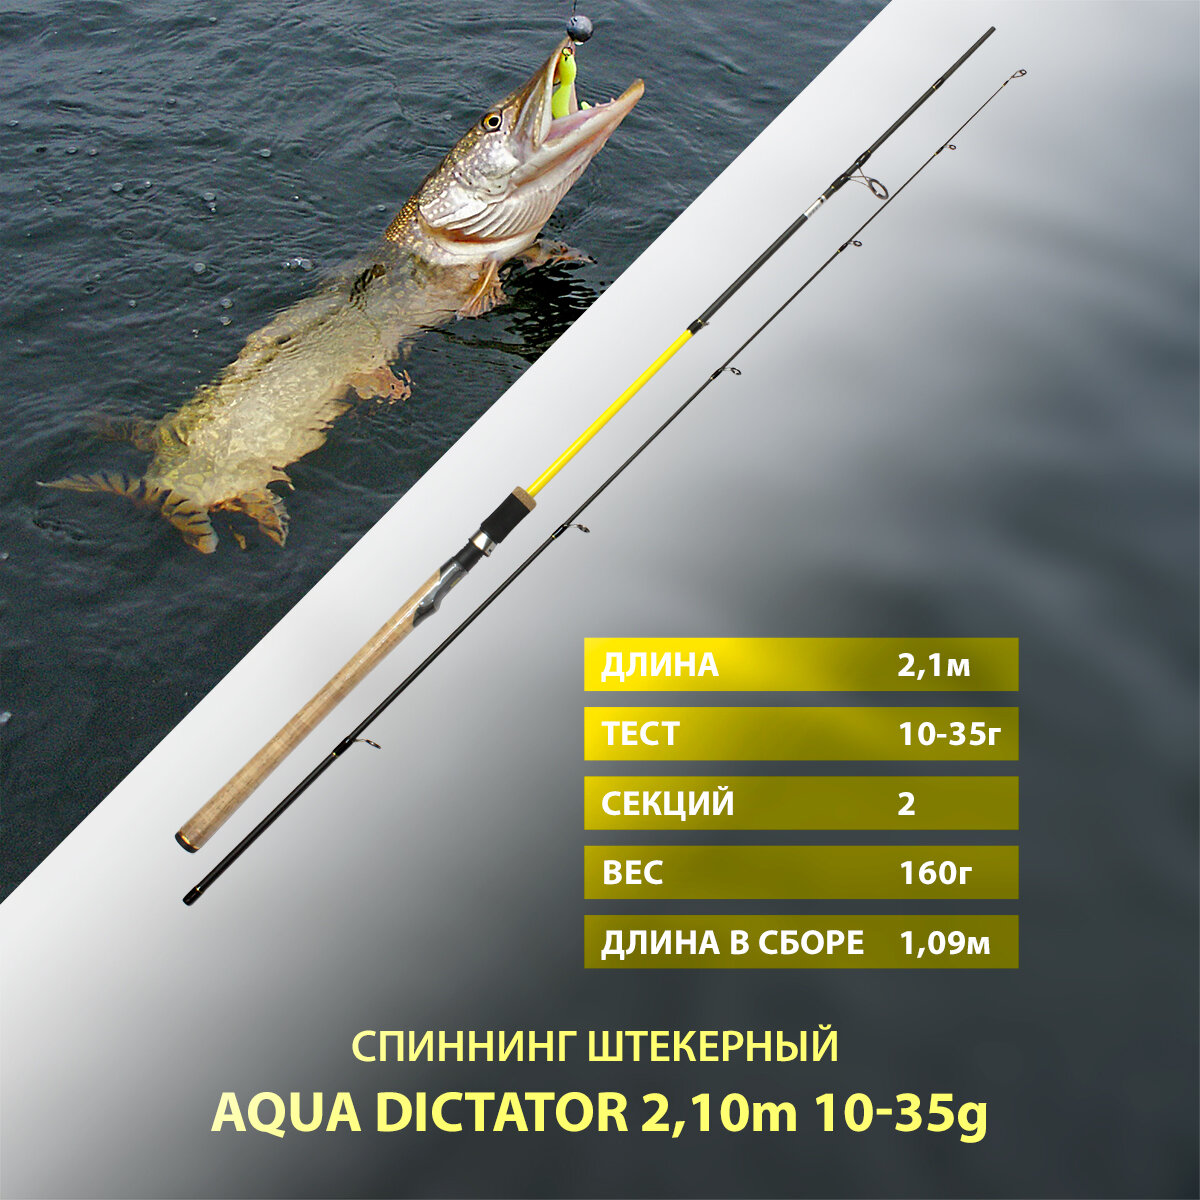 Спиннинг штекерный AQUA DICTATOR, длина 2,10m, тест 10-35g